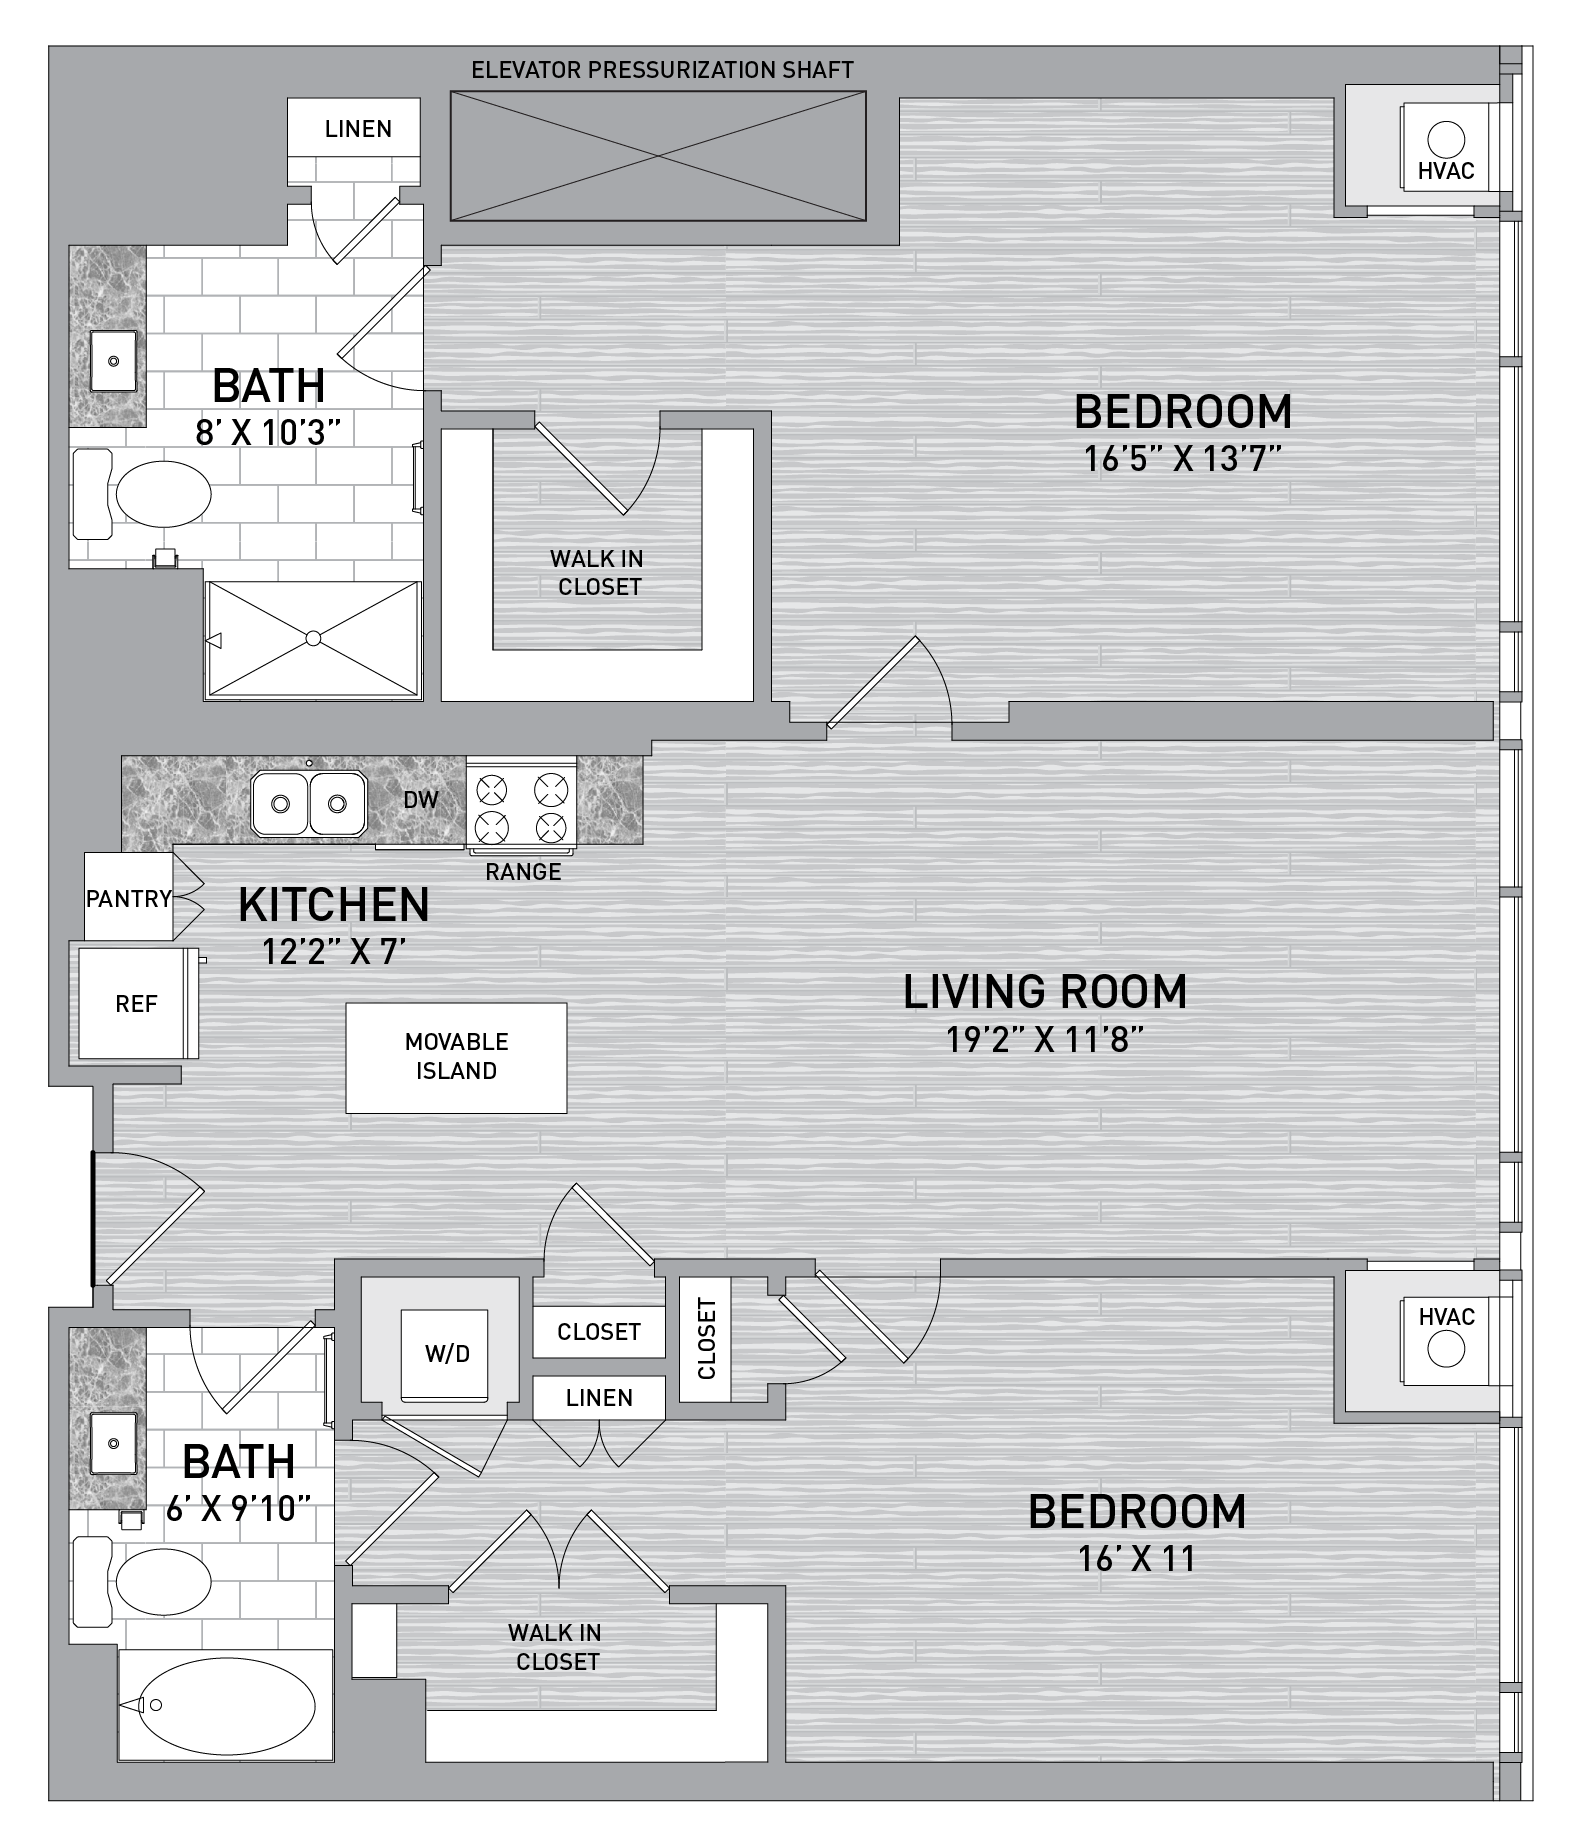 floorplan image of unit id 0705